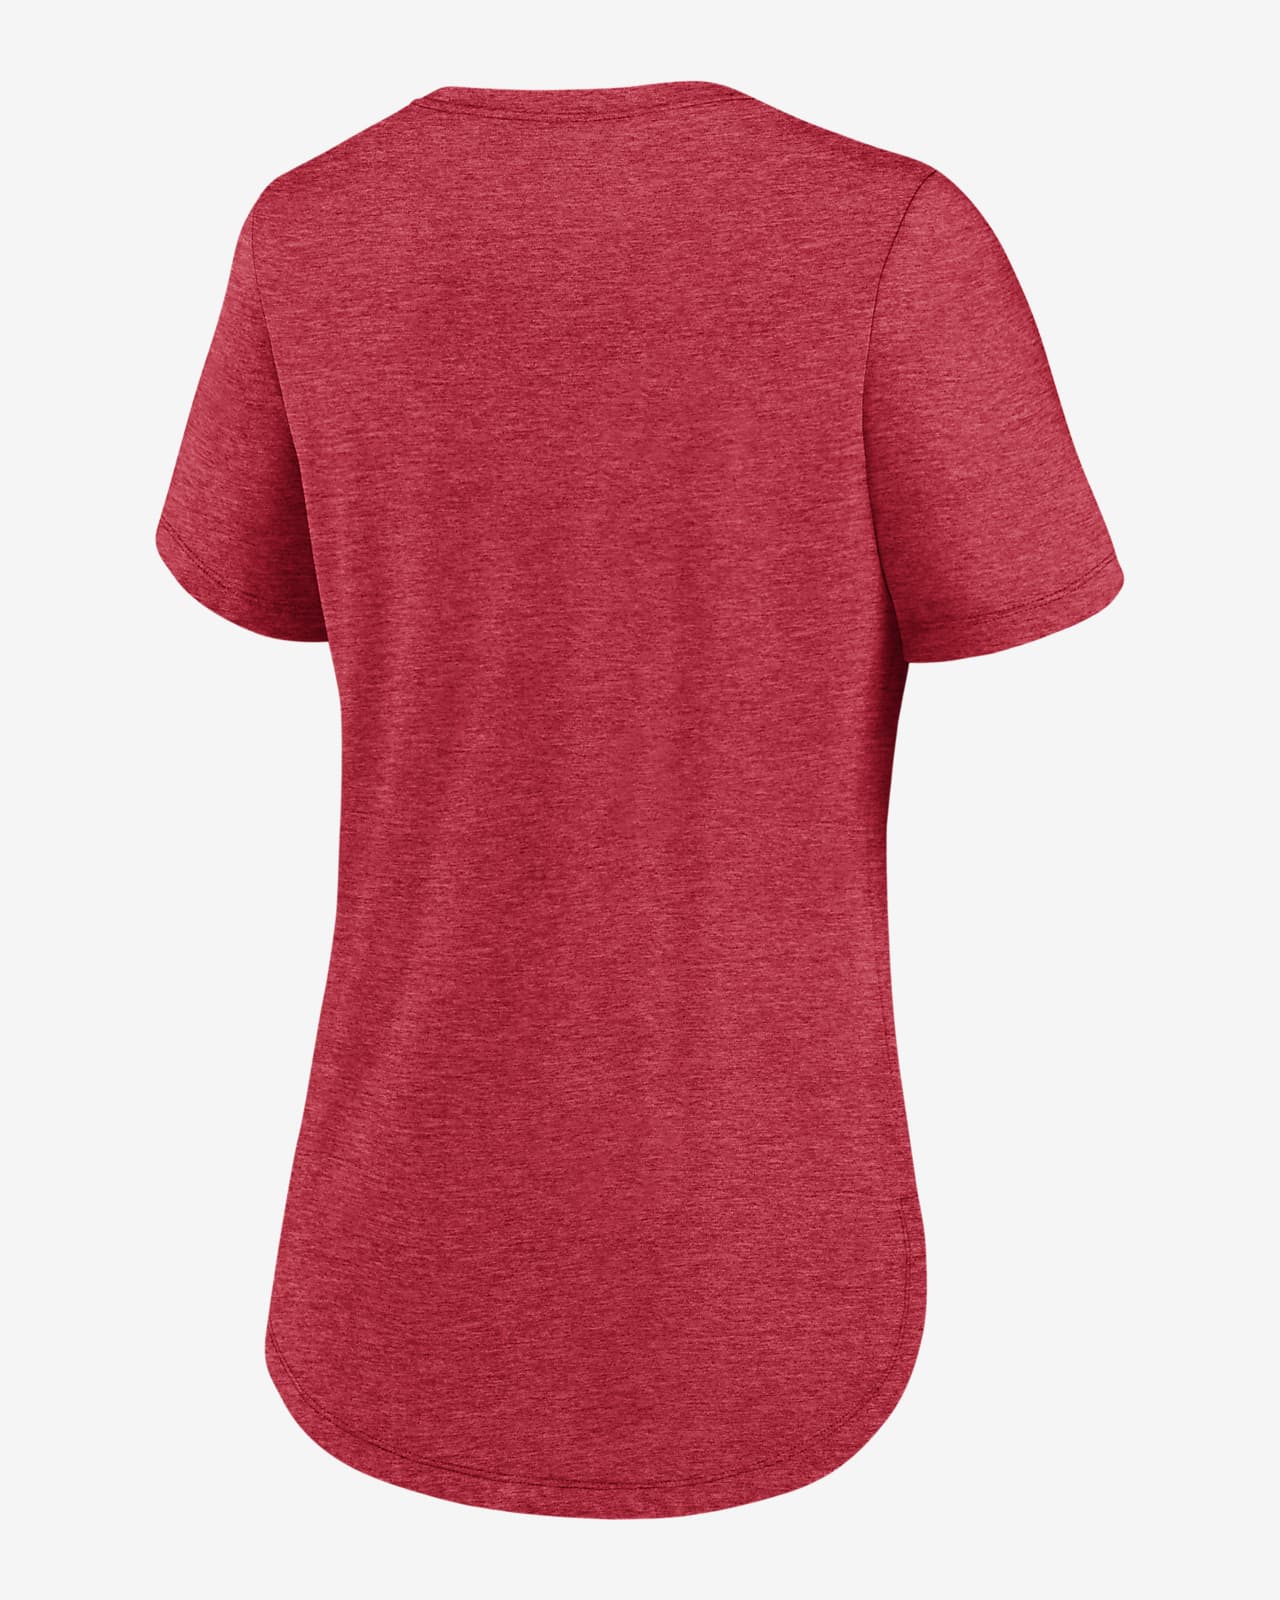 Nike Team Touch (MLB Cincinnati Reds) Women's T-Shirt.